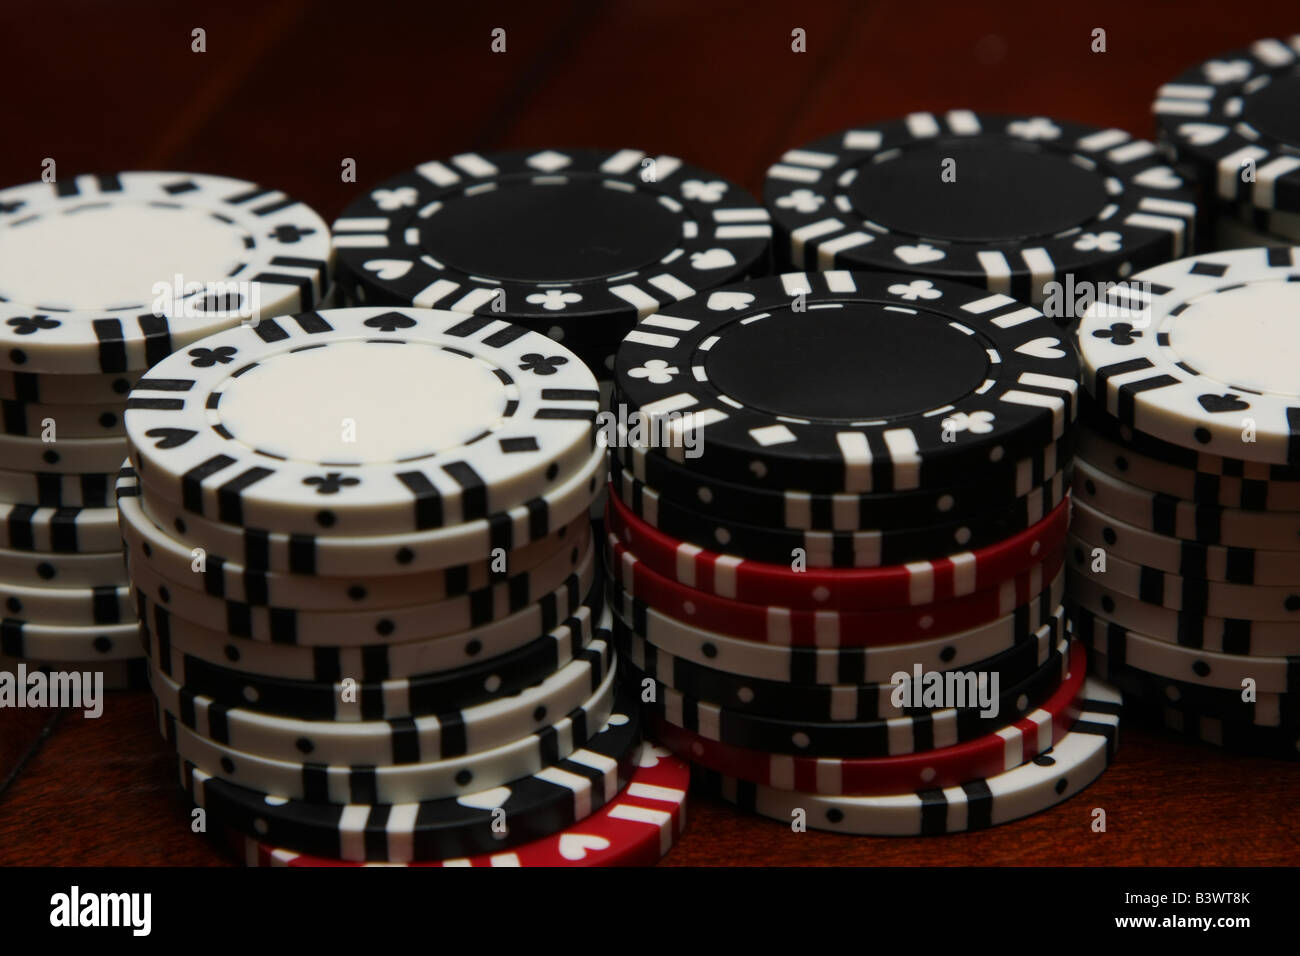 Una pila de rojo, negro y blanco poker chips utilizados en juegos de poker como texas holdem, Omaha, razz, Stud y blackjack. Foto de stock